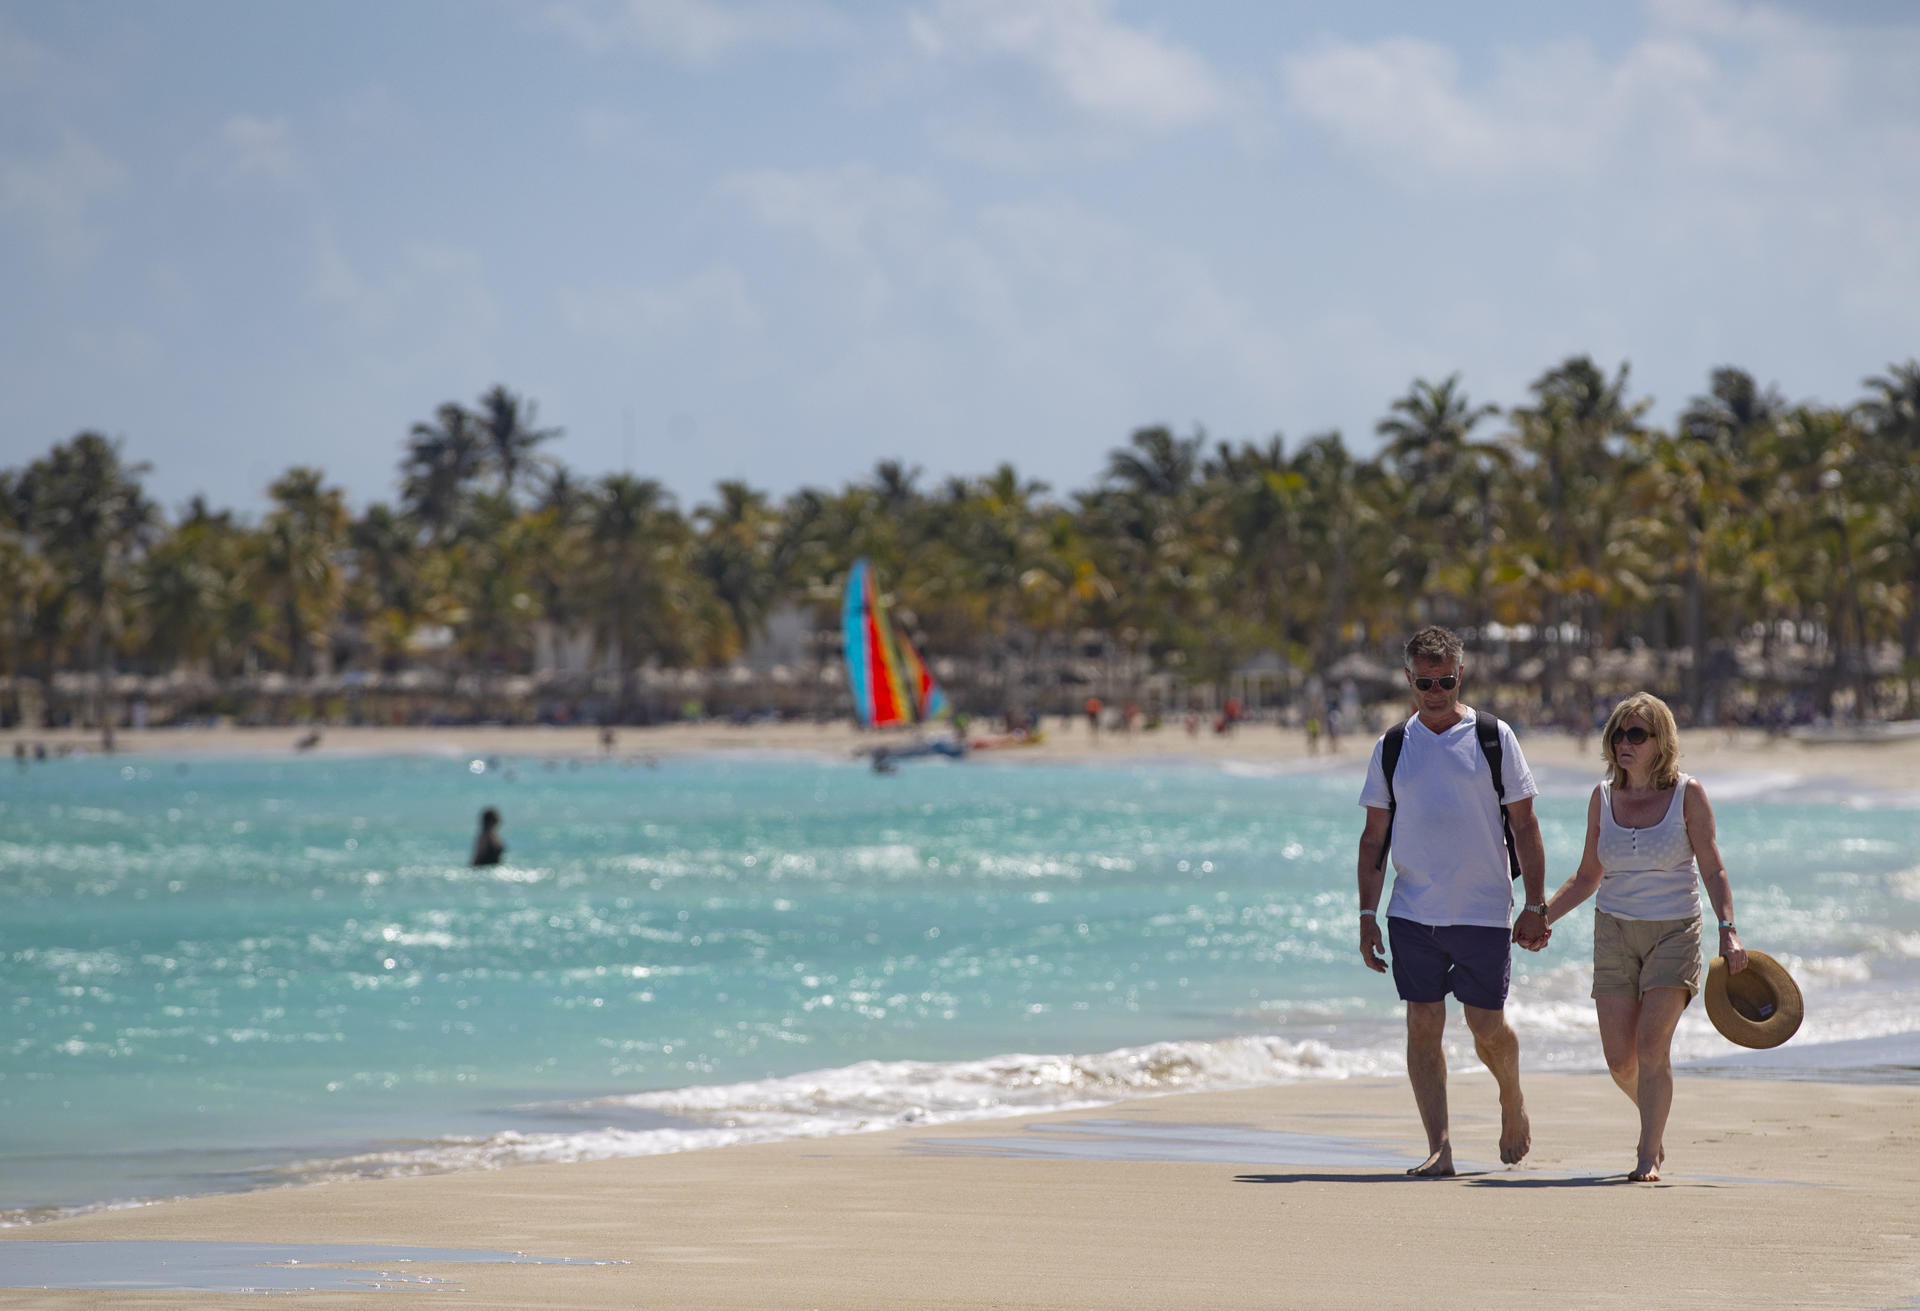 Turismo en el Caribe repunta, con Cancún y República Dominicana a la cabeza